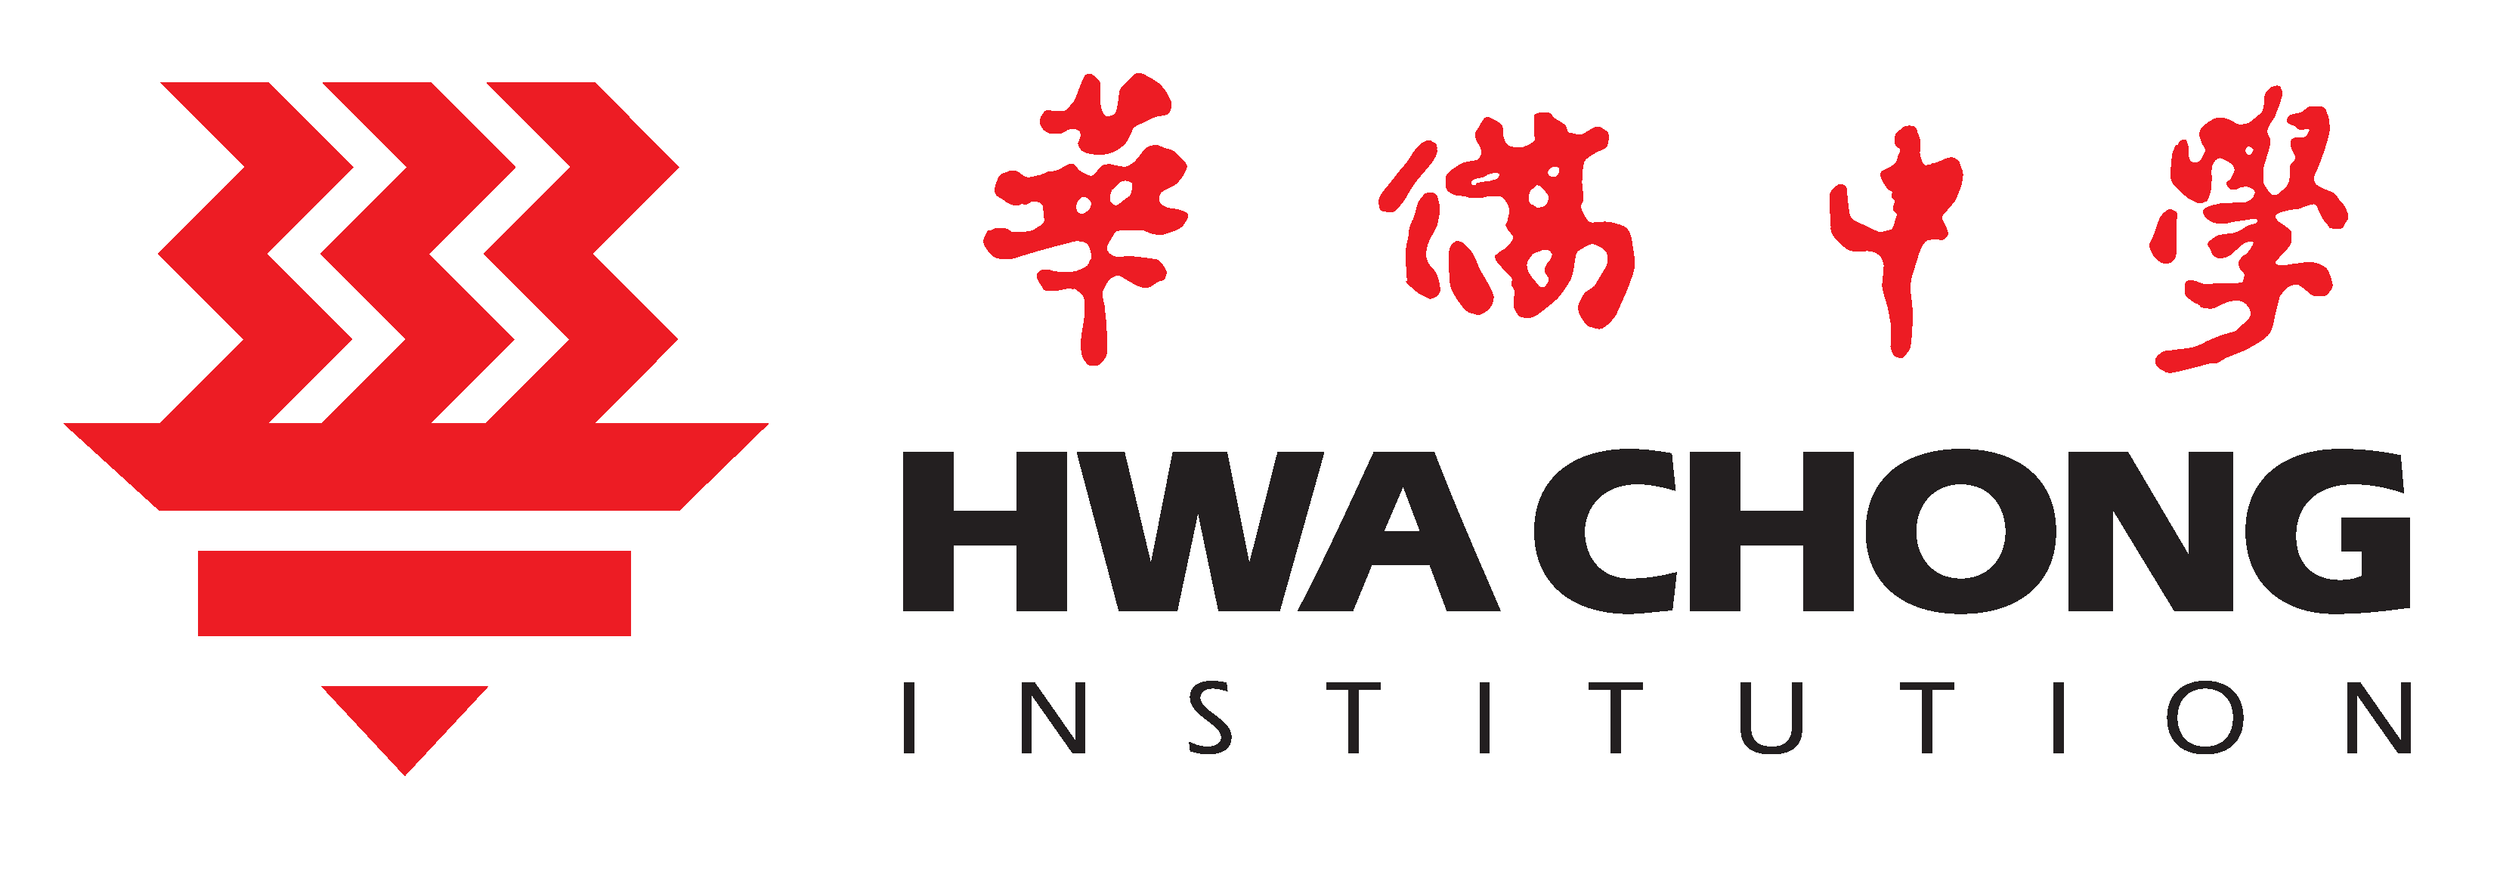 Hwa Chong Institution logo.png